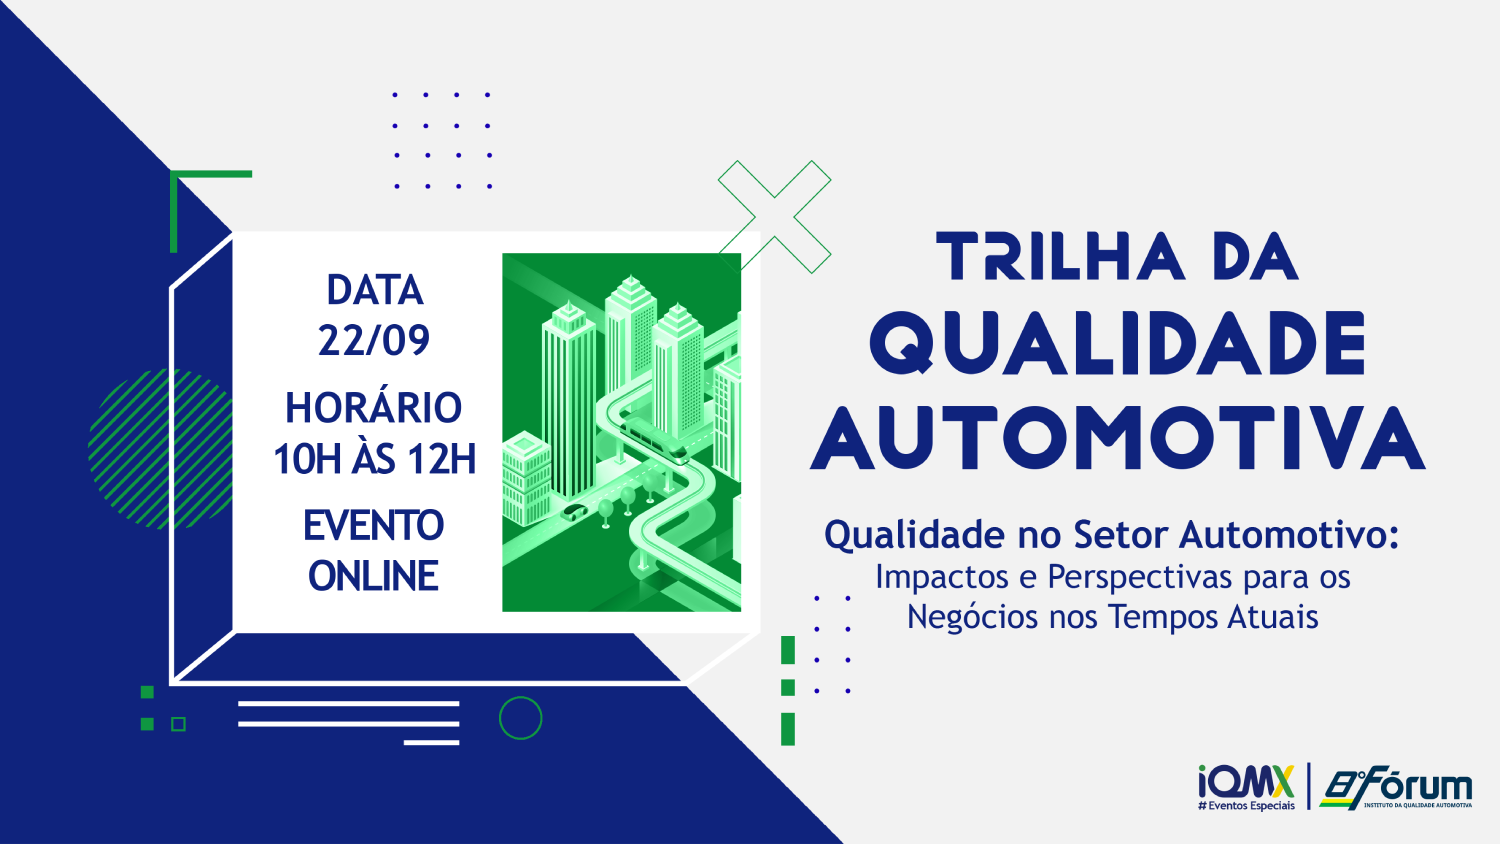 (Português BR) Trilha da Qualidade Automotiva – Qualidade no Setor Automotivo: Impactos e Perspectivas para os Negócios nos Tempos Atuais